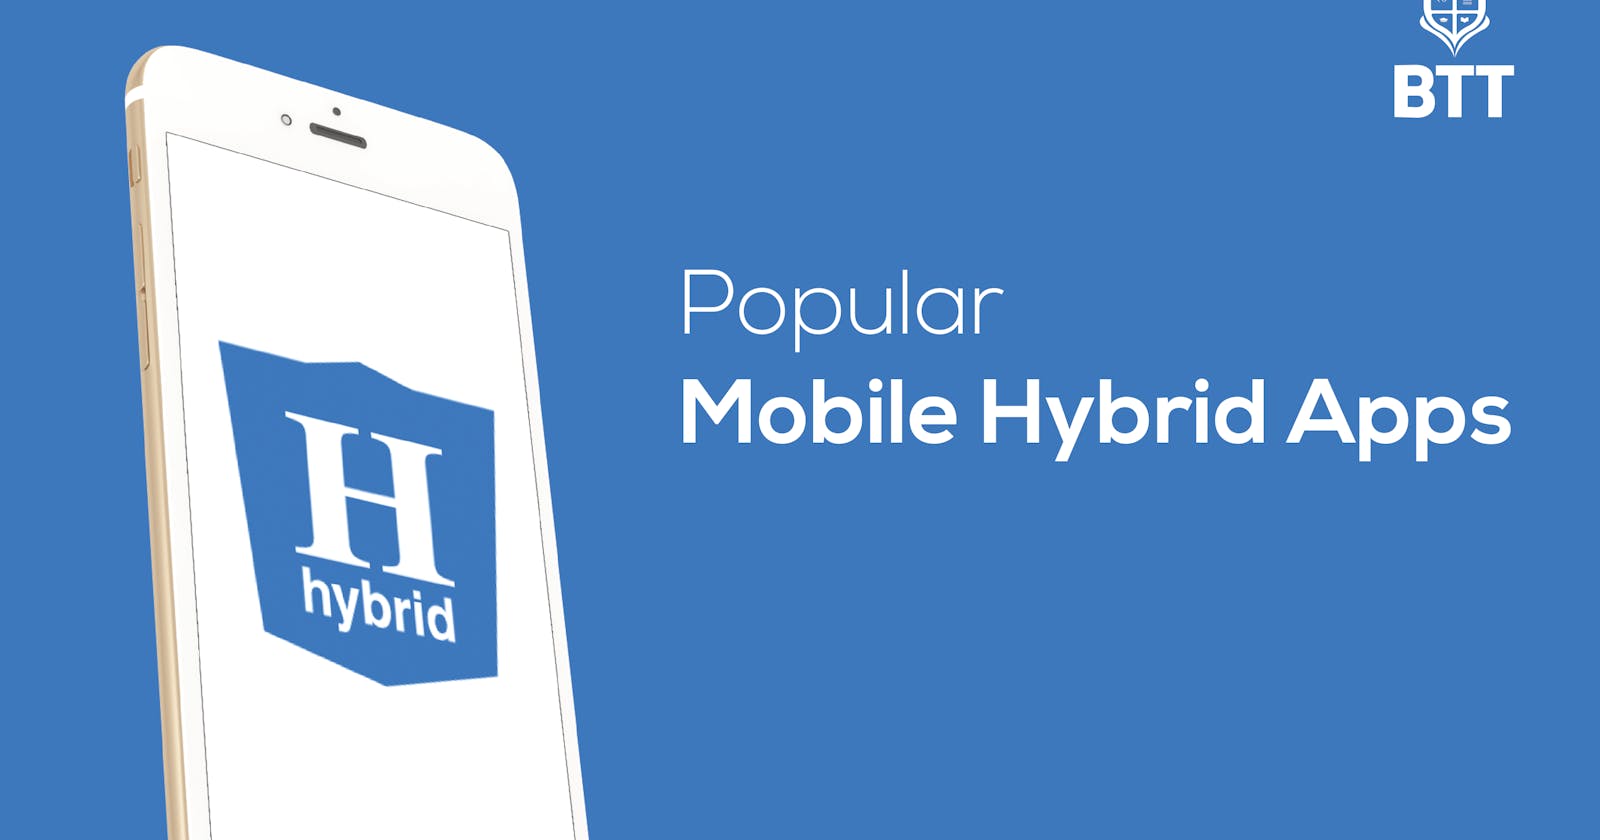 Popular Mobile Hybrid Apps